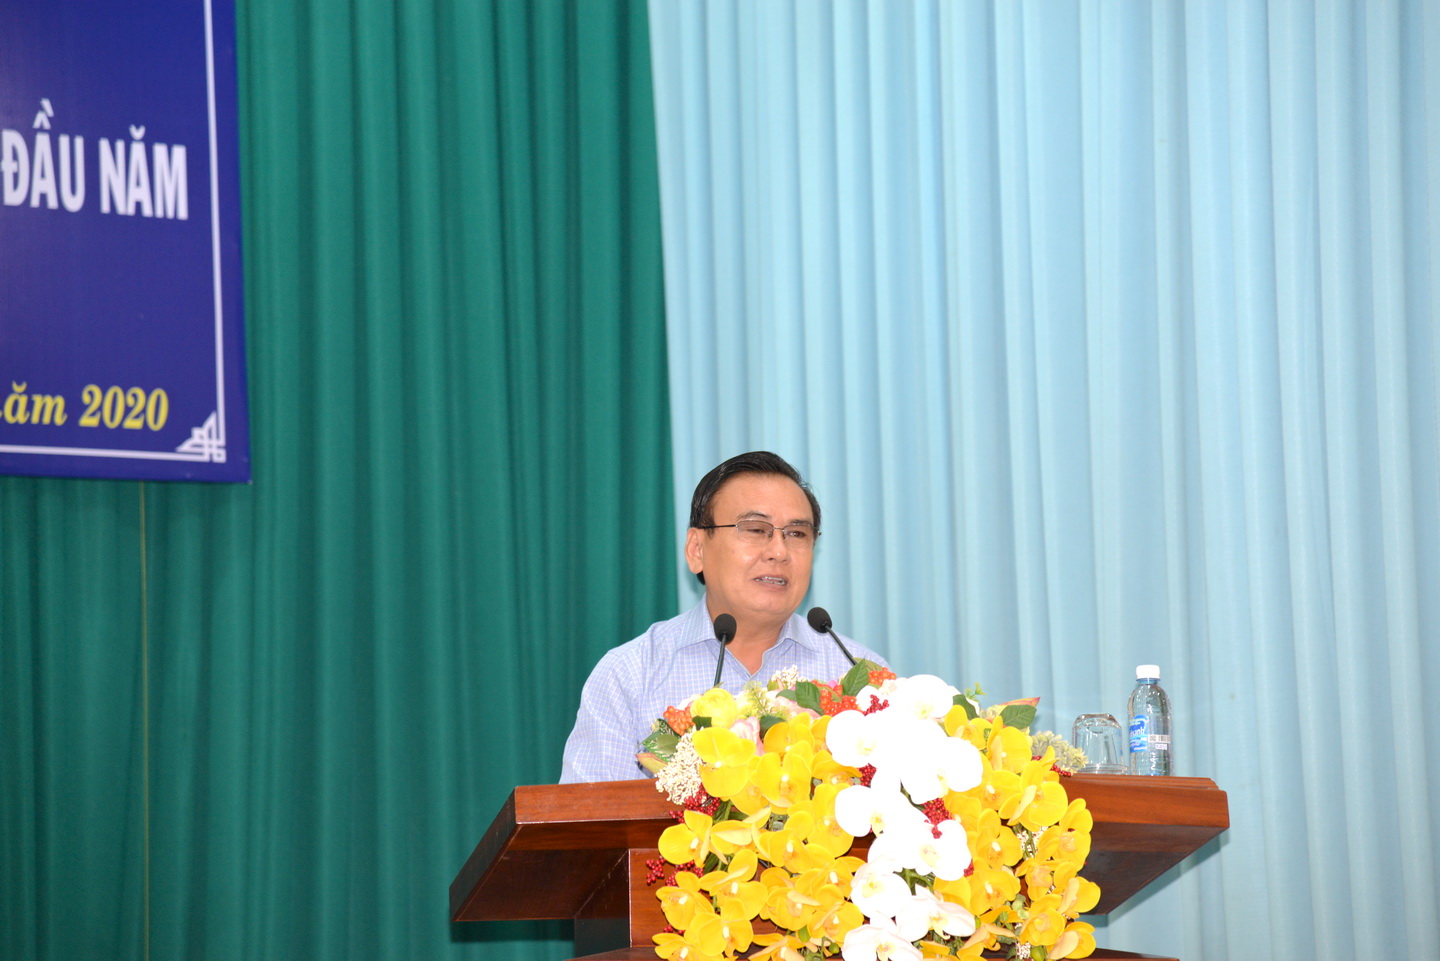 Đồng chí Võ Văn Bình, Phó Bí thư Thường trực Tỉnh ủy gợi ý những vấn đề trọng tâm hội nghị cần tập trung thảo l;uận